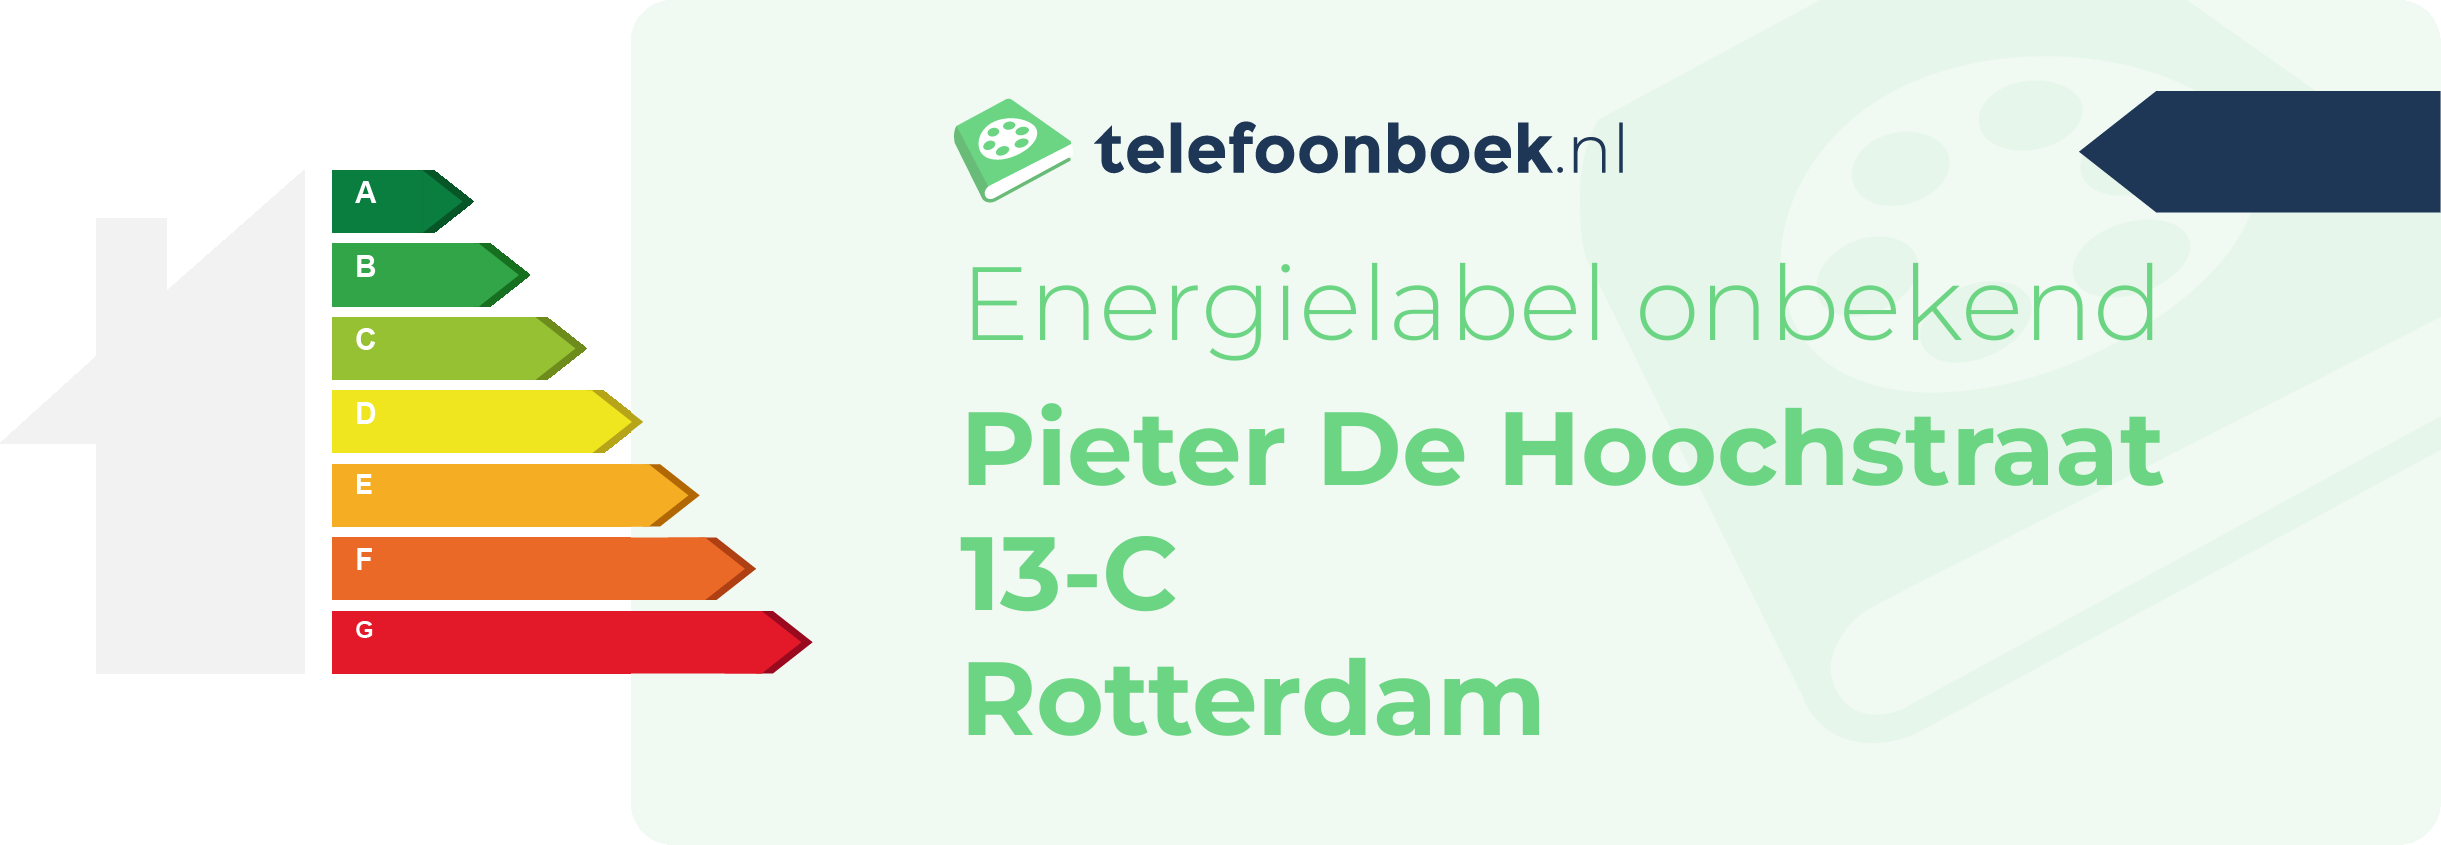 Energielabel Pieter De Hoochstraat 13-C Rotterdam